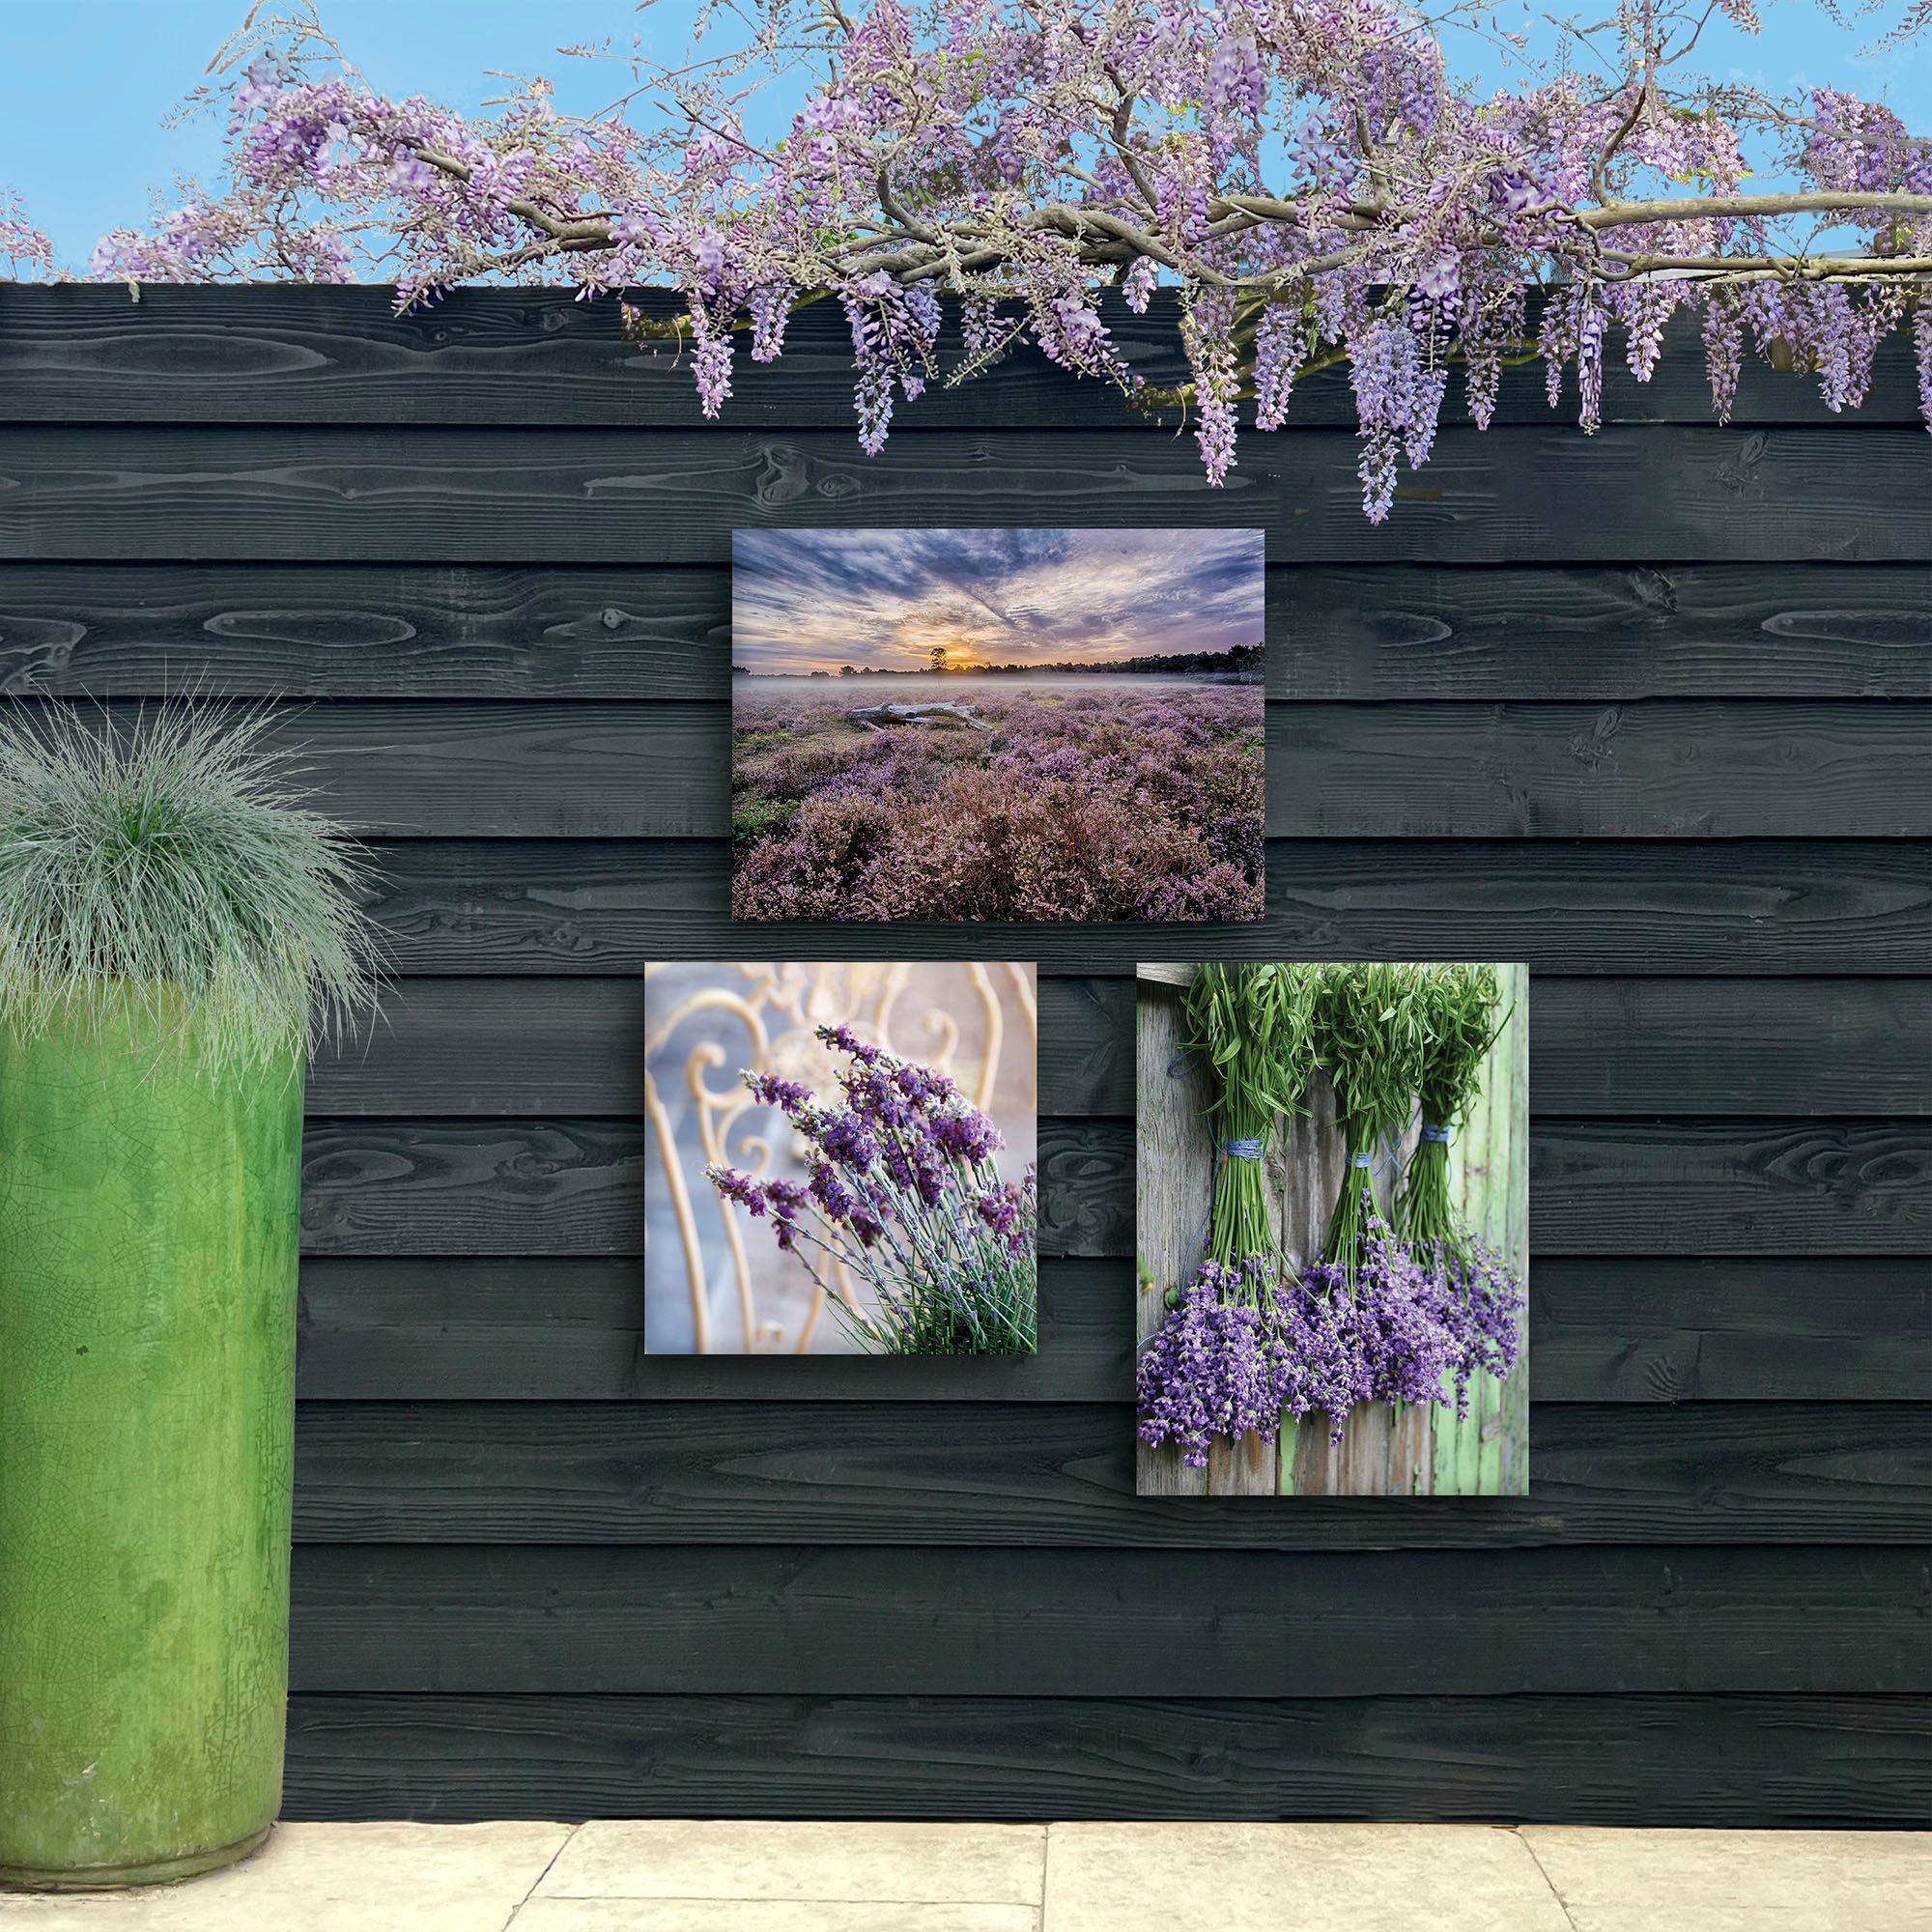 Art for the home Lavendel Leinwandbild Outdoor St) 50x70cm, (1